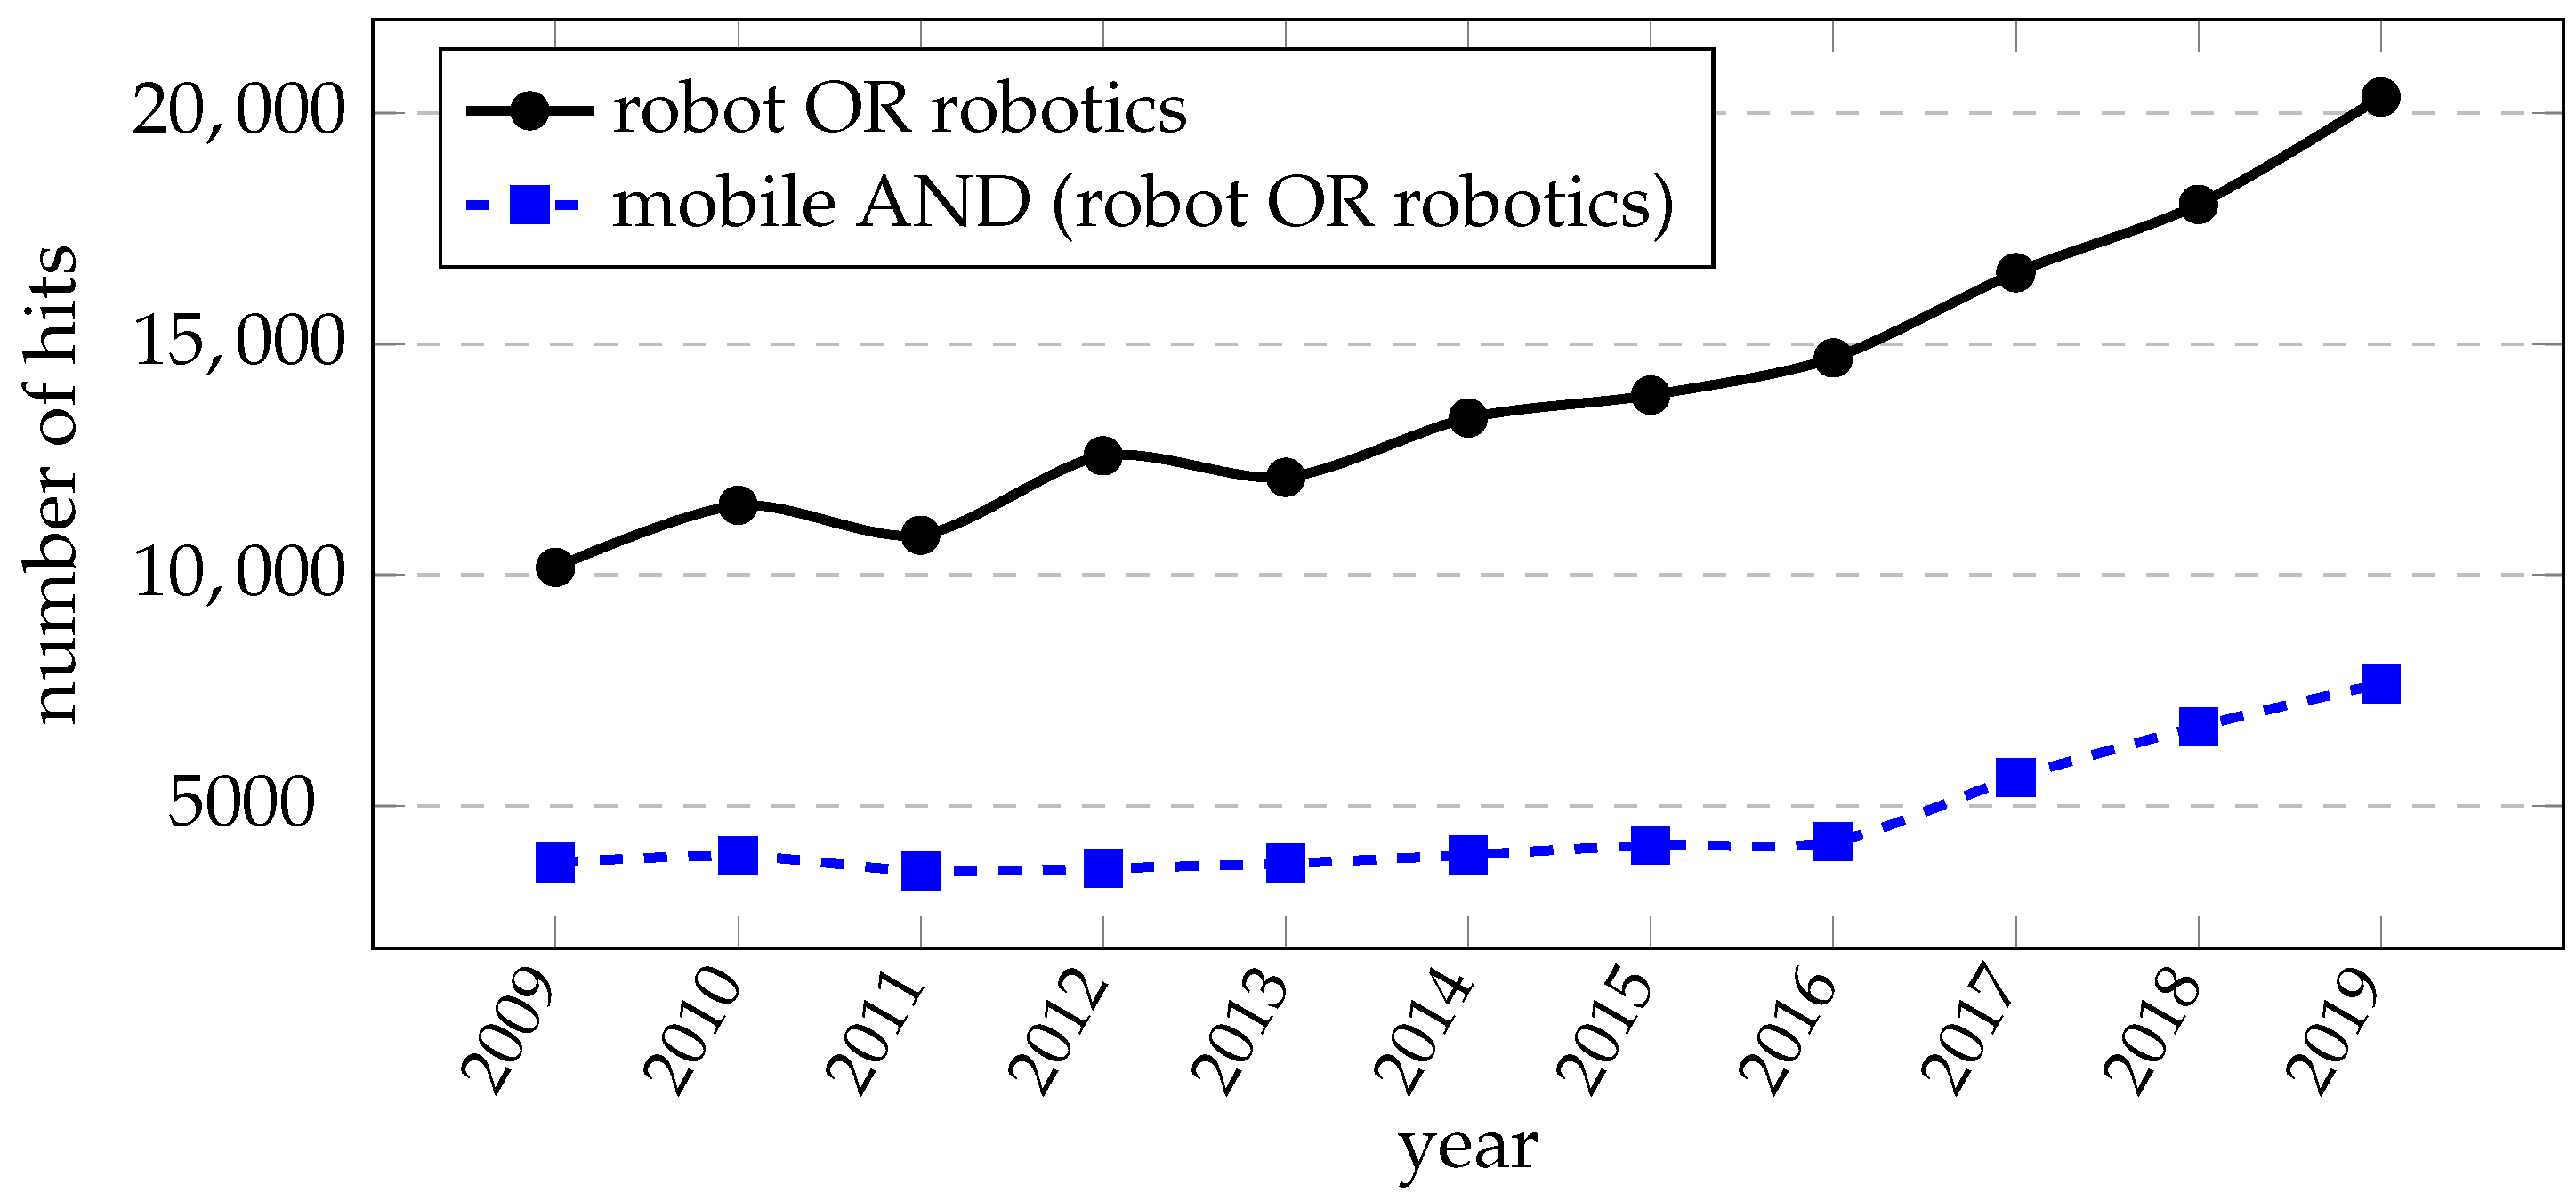 In Louis robots sex Saint ROBOTS movie